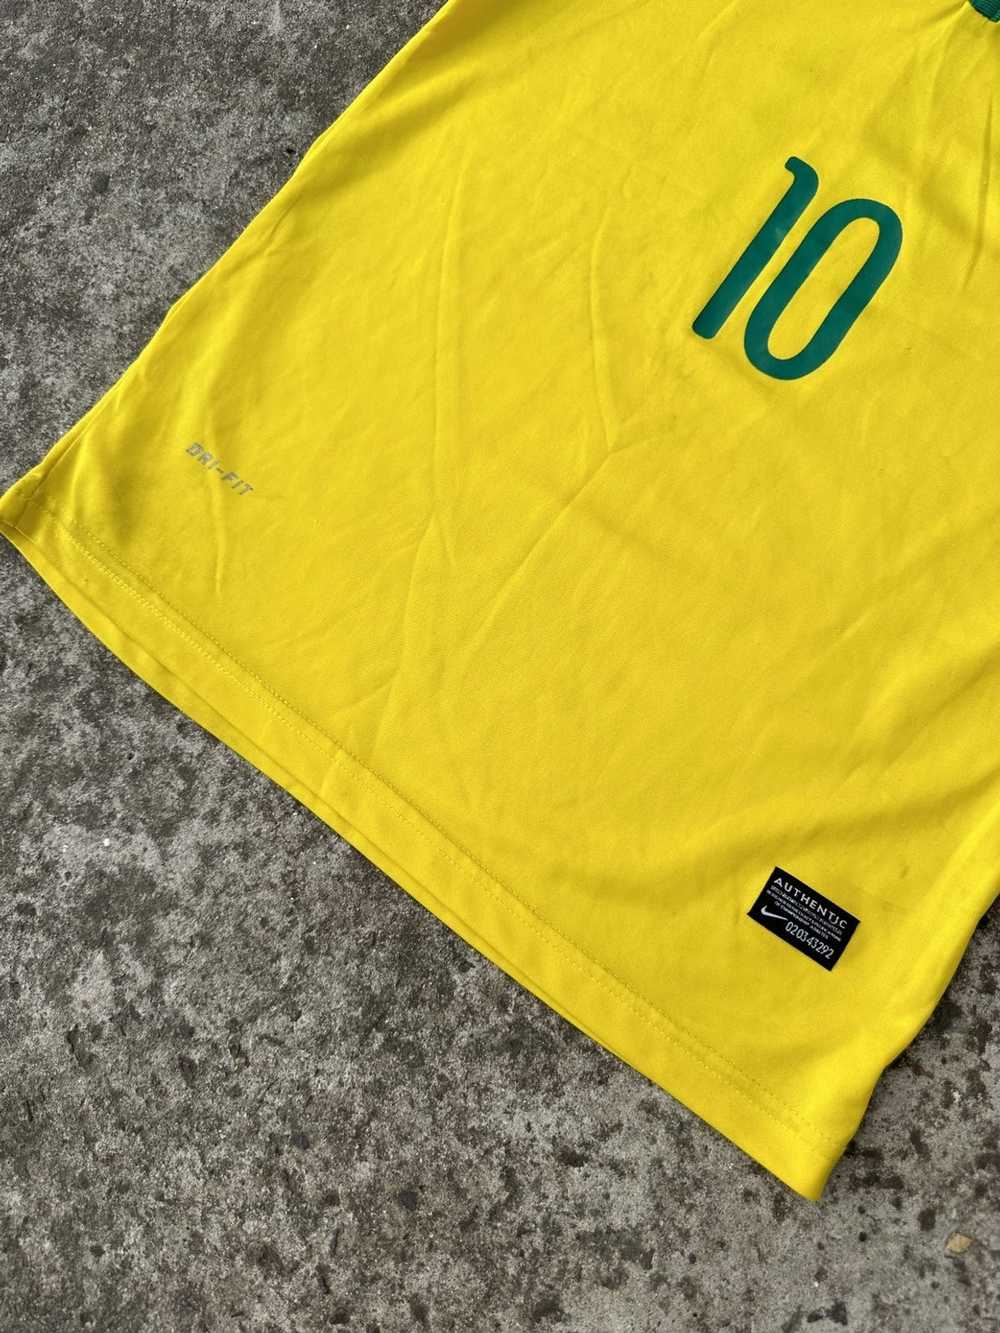 Soccer Jersey × Sportswear × Streetwear Nike Braz… - image 4